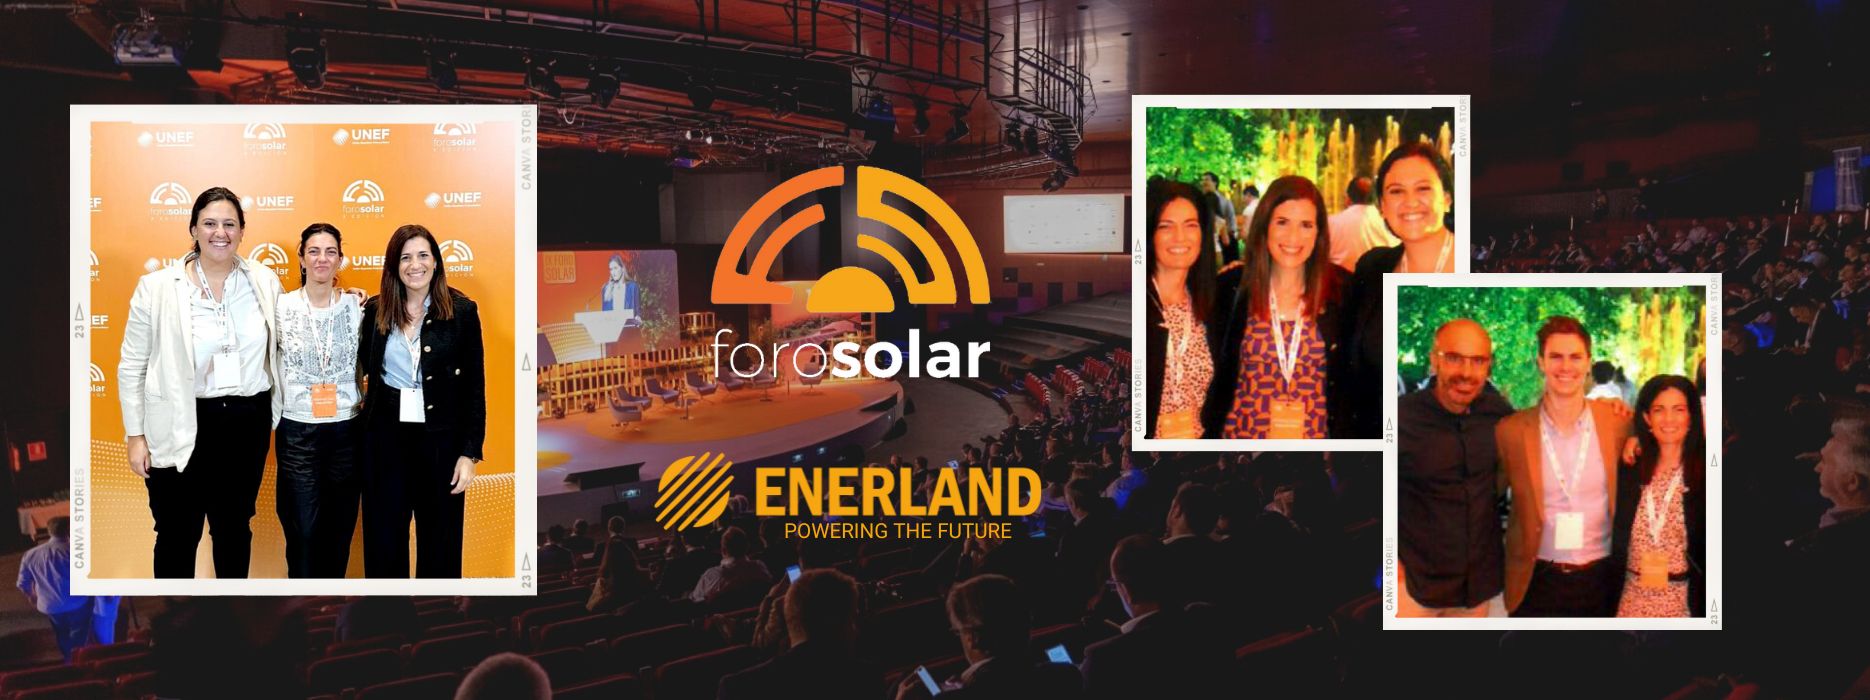 Enerland Group asiste al X Foro Solar de la UNEF